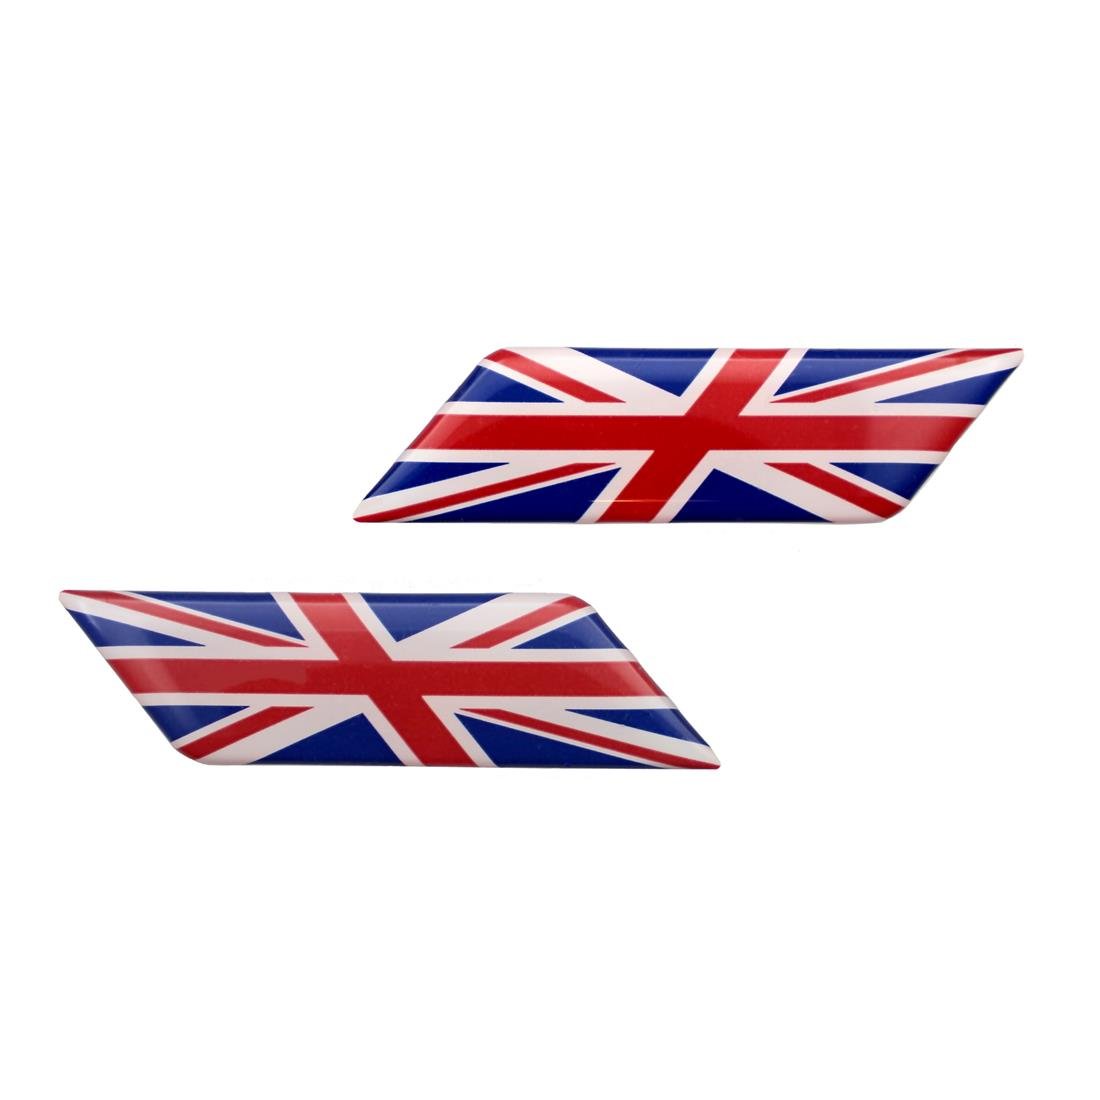 Helm, UK Union Jack, England-Flaggen, 3D-Aufkleber, gewölbt, für linke und rechte Seite, Aufkleber MioVespa-Kollektion von EU-Decals - MioVespa Collection